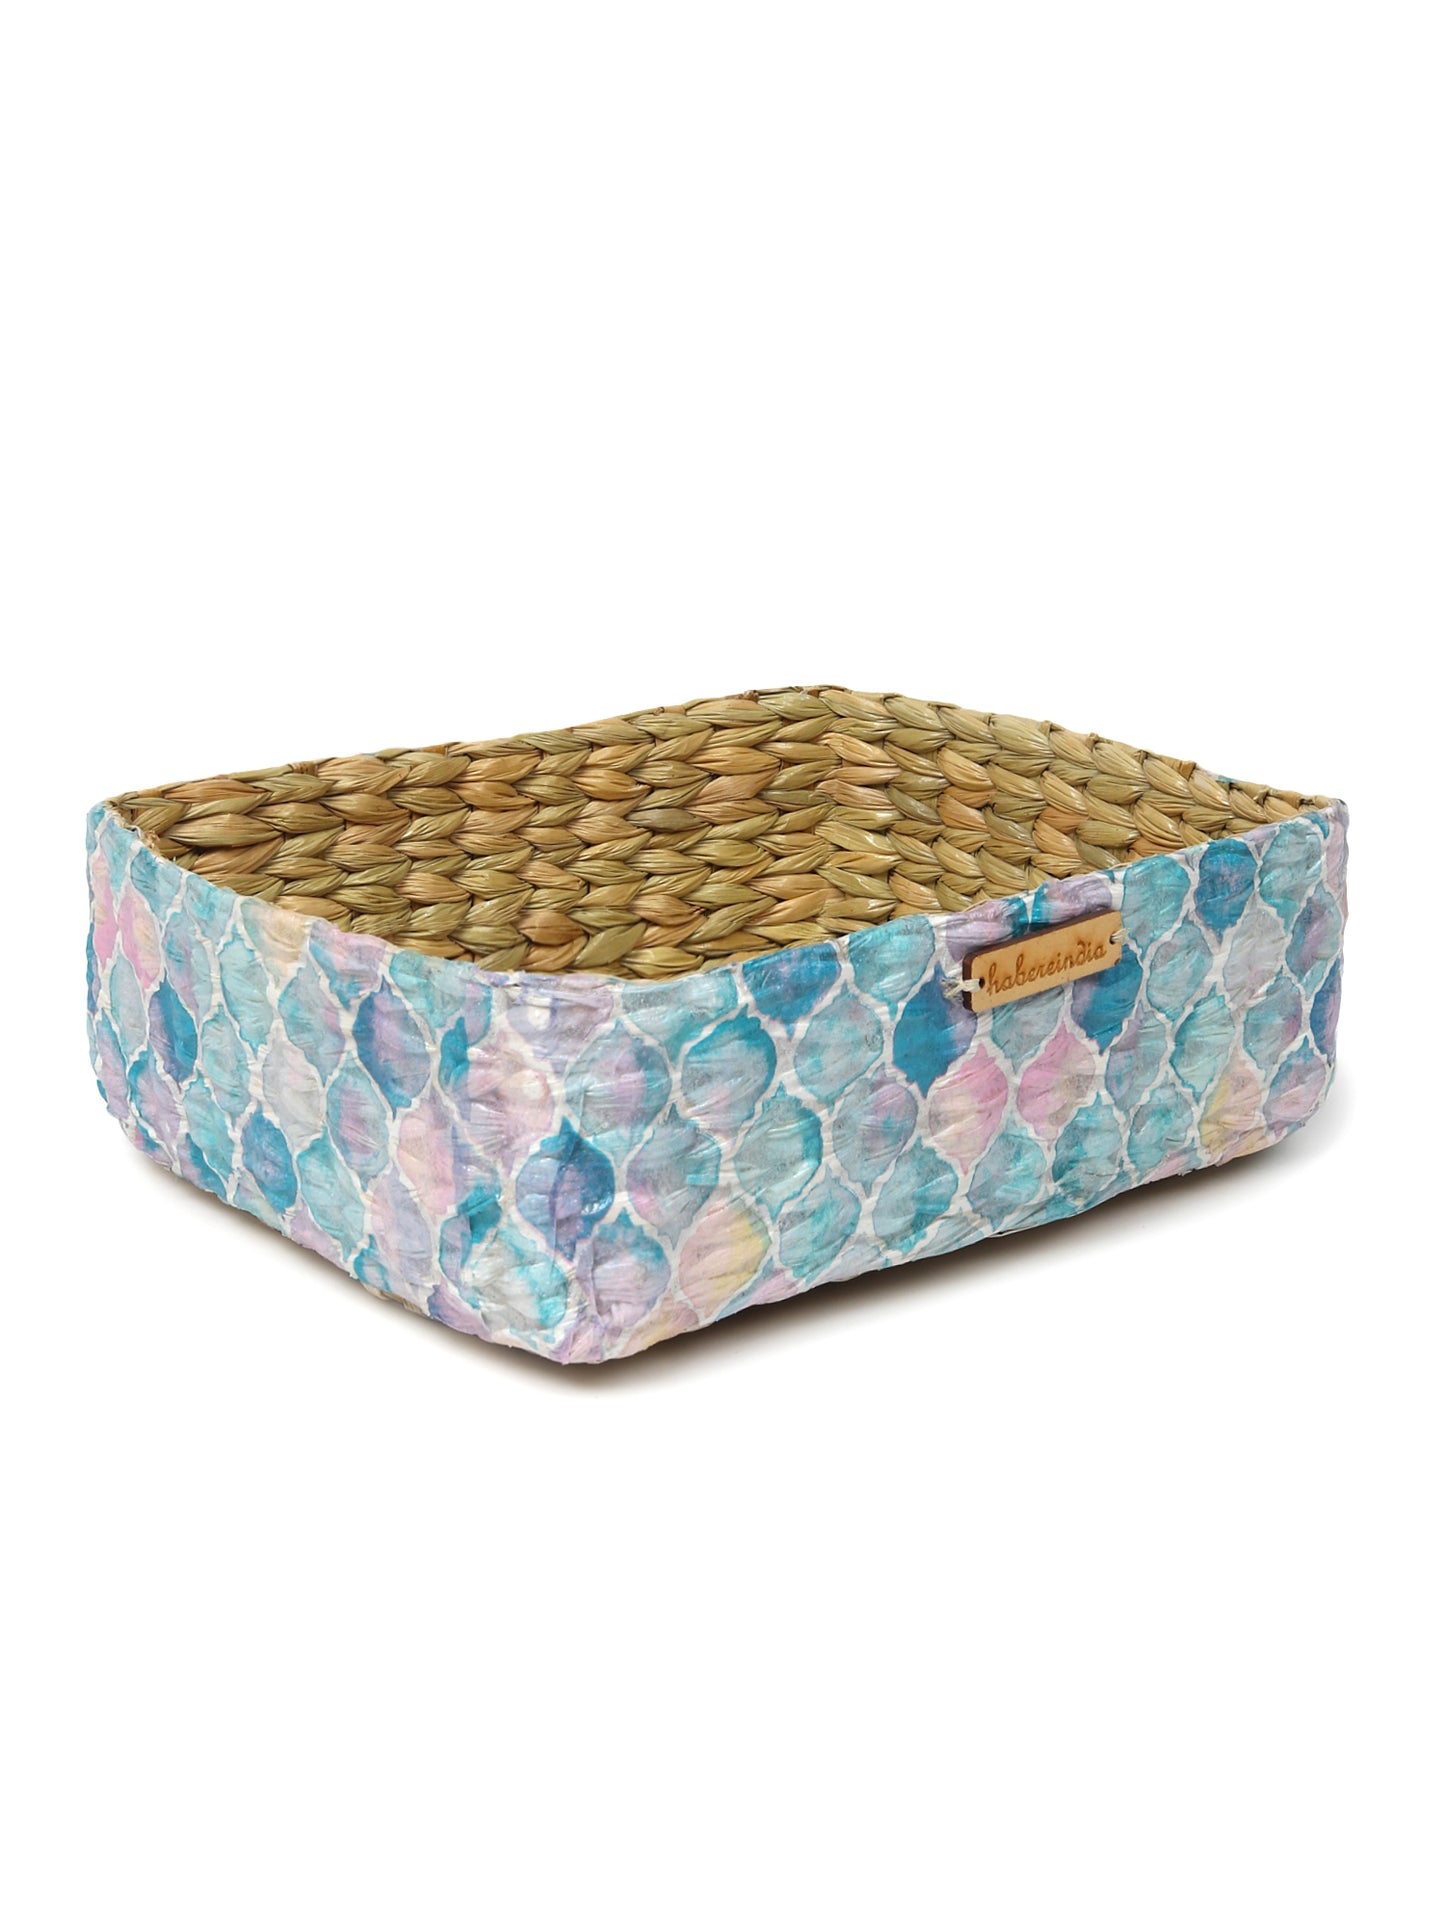 Seagrass Organiser Tray | Storage Basket